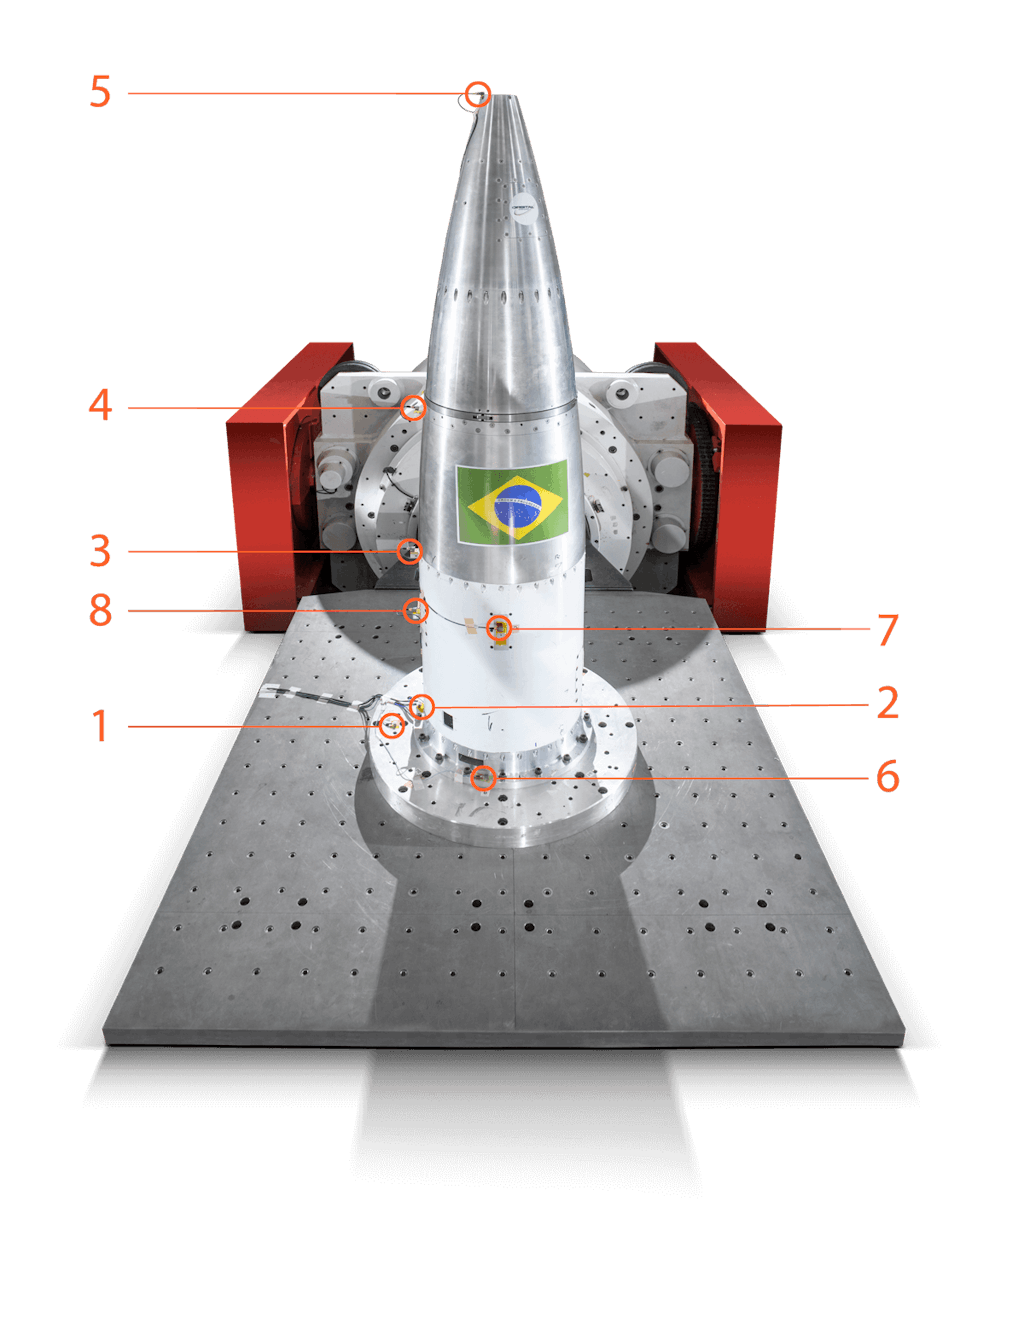 Testaufbau: Positionierung der Beschleunigungssensoren: sieben auf der zu testenden Raketenspitze, einer auf der am Schwingtisch befestigten Adapterplatte